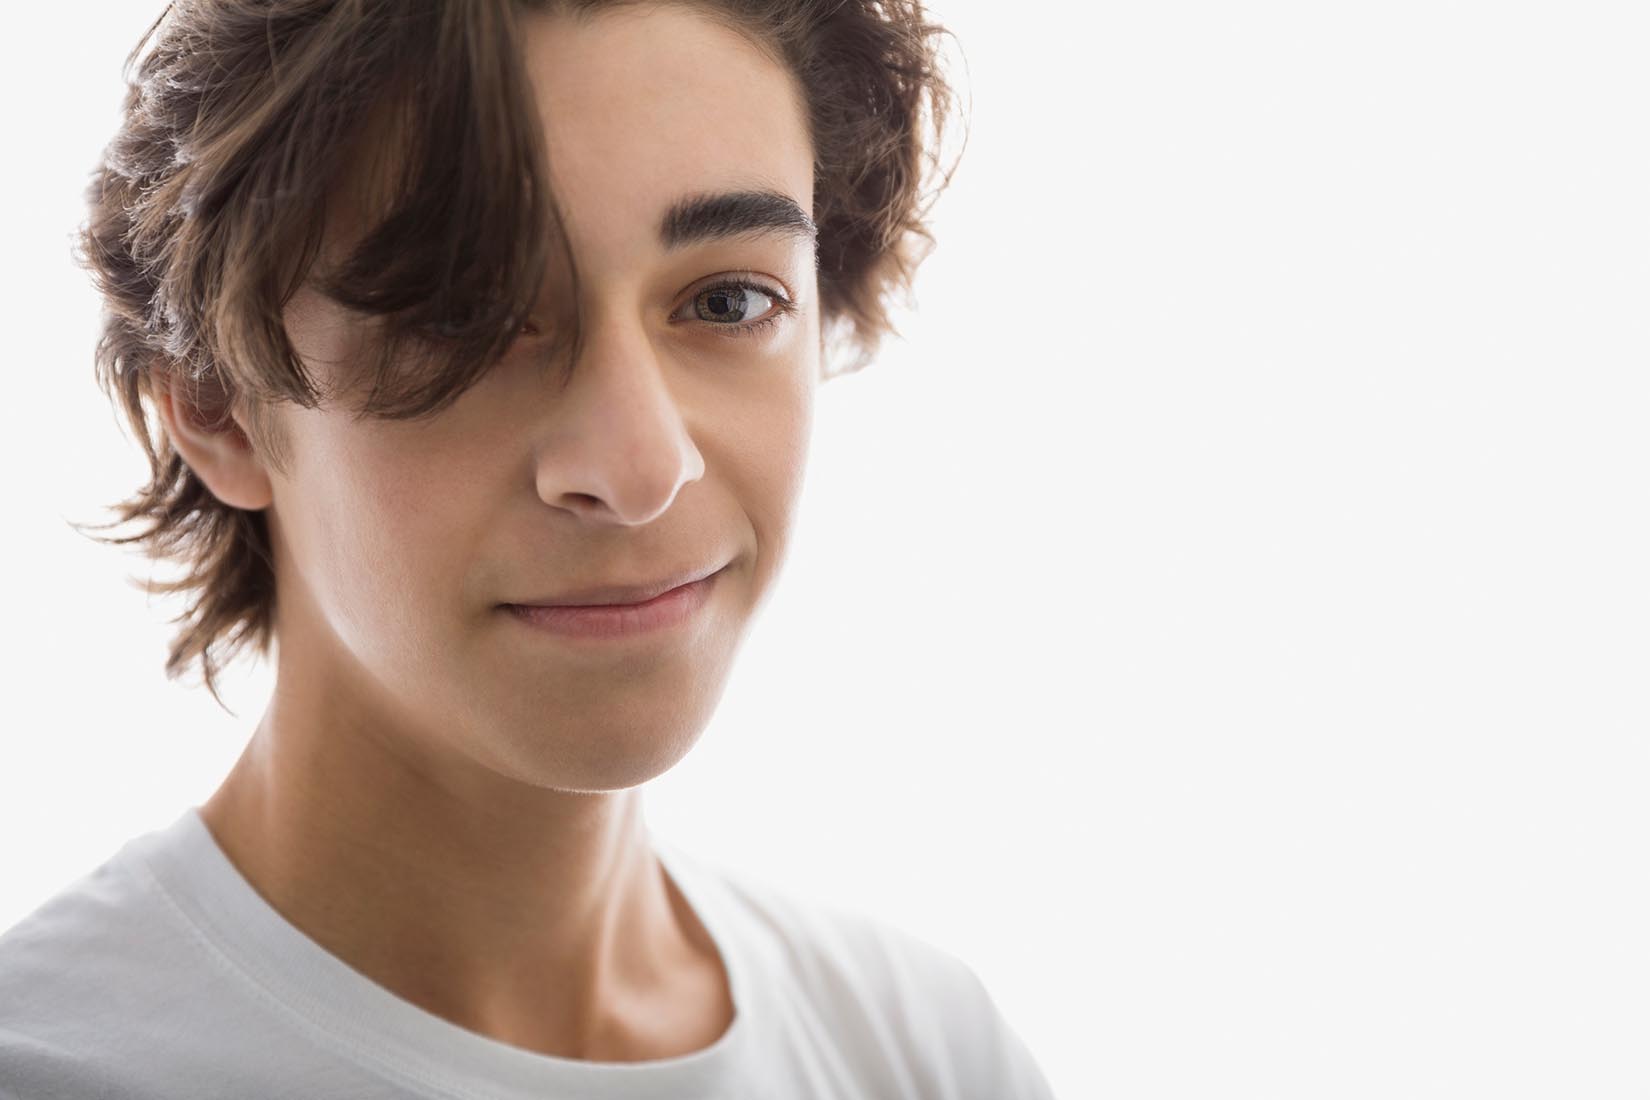 Entiende las causas del acné en adolescentes para dar buenos consejos